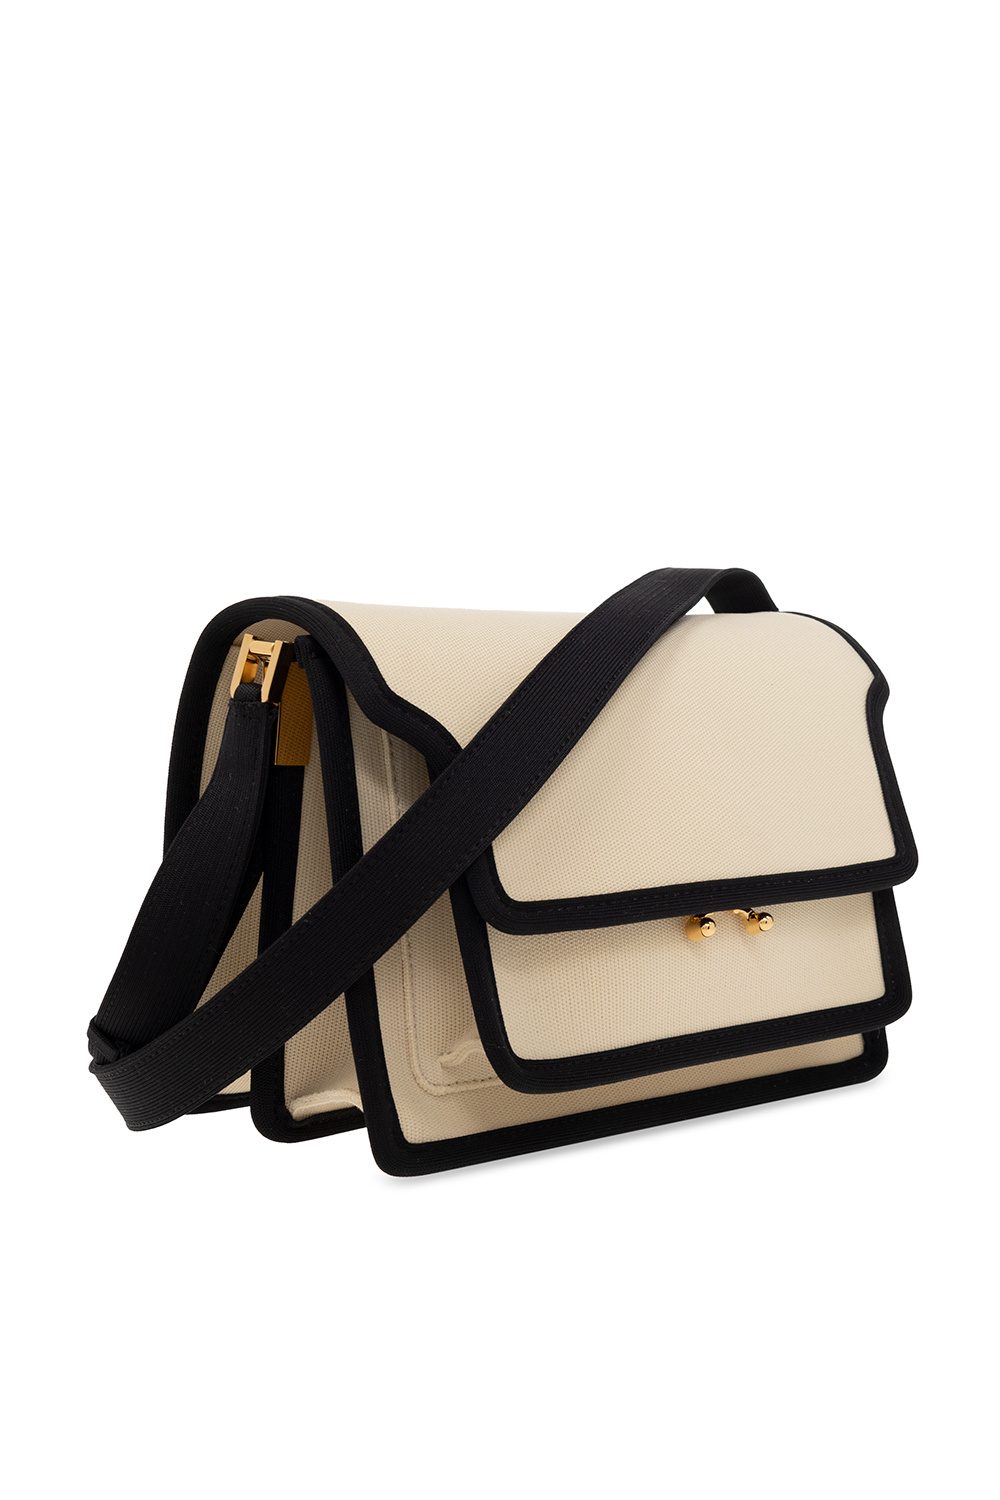 Marni ‘Trunk Soft’ shoulder bag